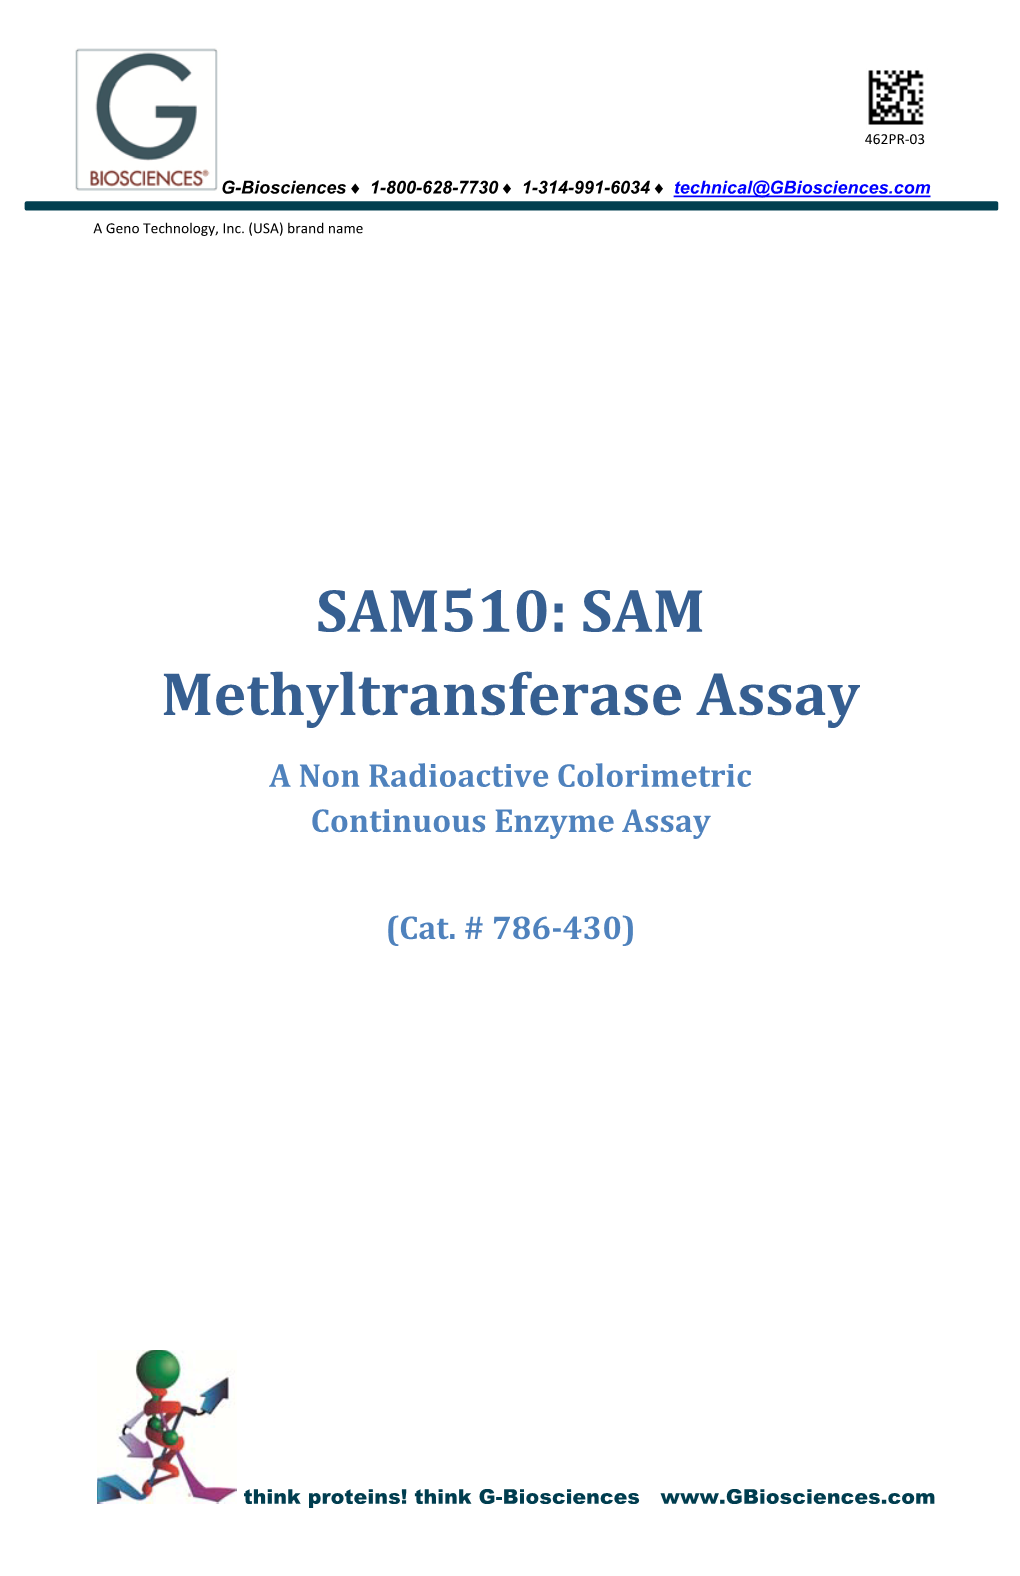 SAM Methyltransferase Assay a Non Radioactive Colorimetric Continuous Enzyme Assay